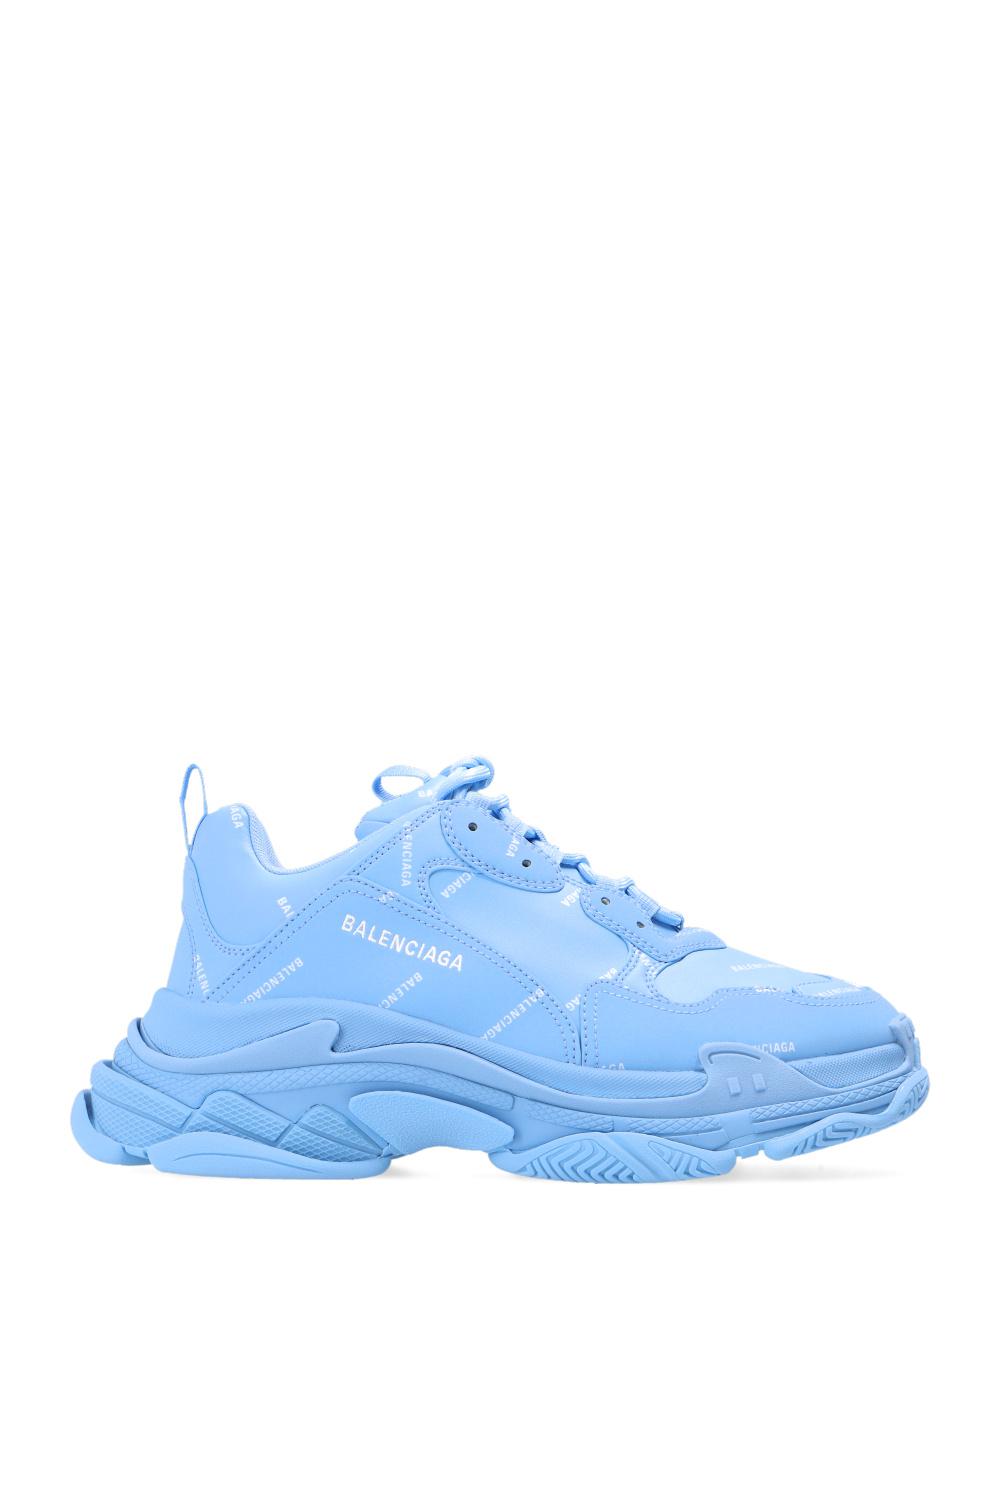 Balenciaga 'triple S' Sneakers in Light Blue (Blue) for Men - Lyst